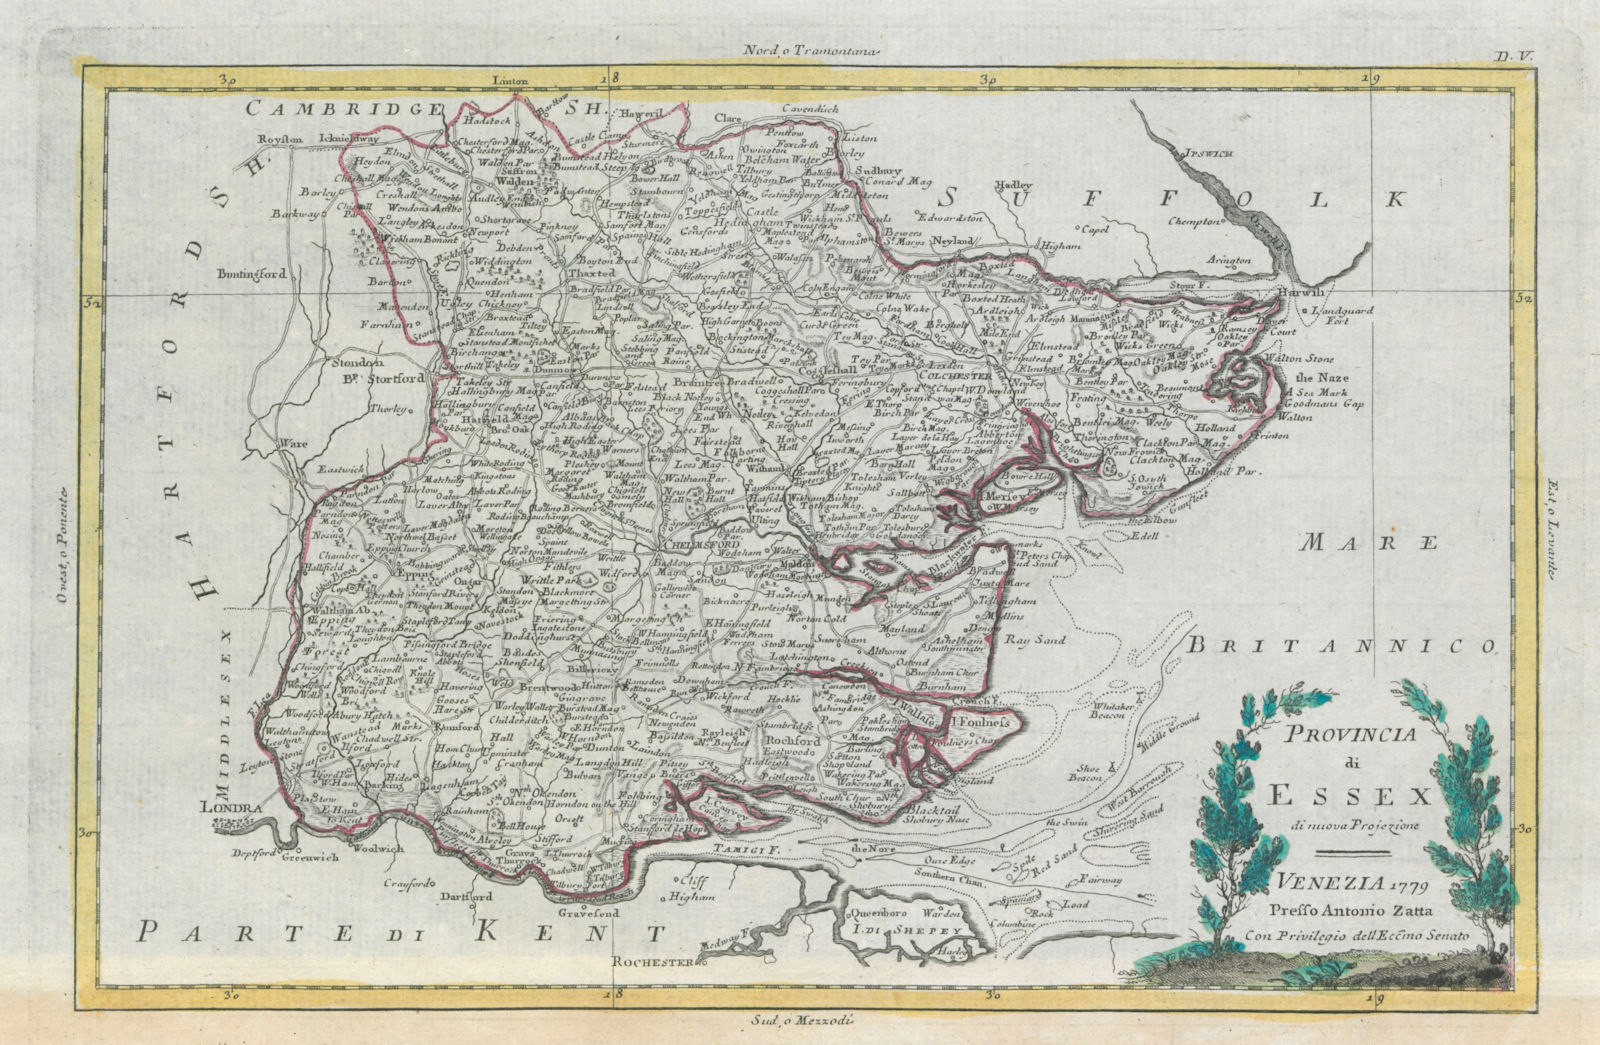 Associate Product "Provincia di Essex". Essex county map. ZATTA 1779 old antique plan chart